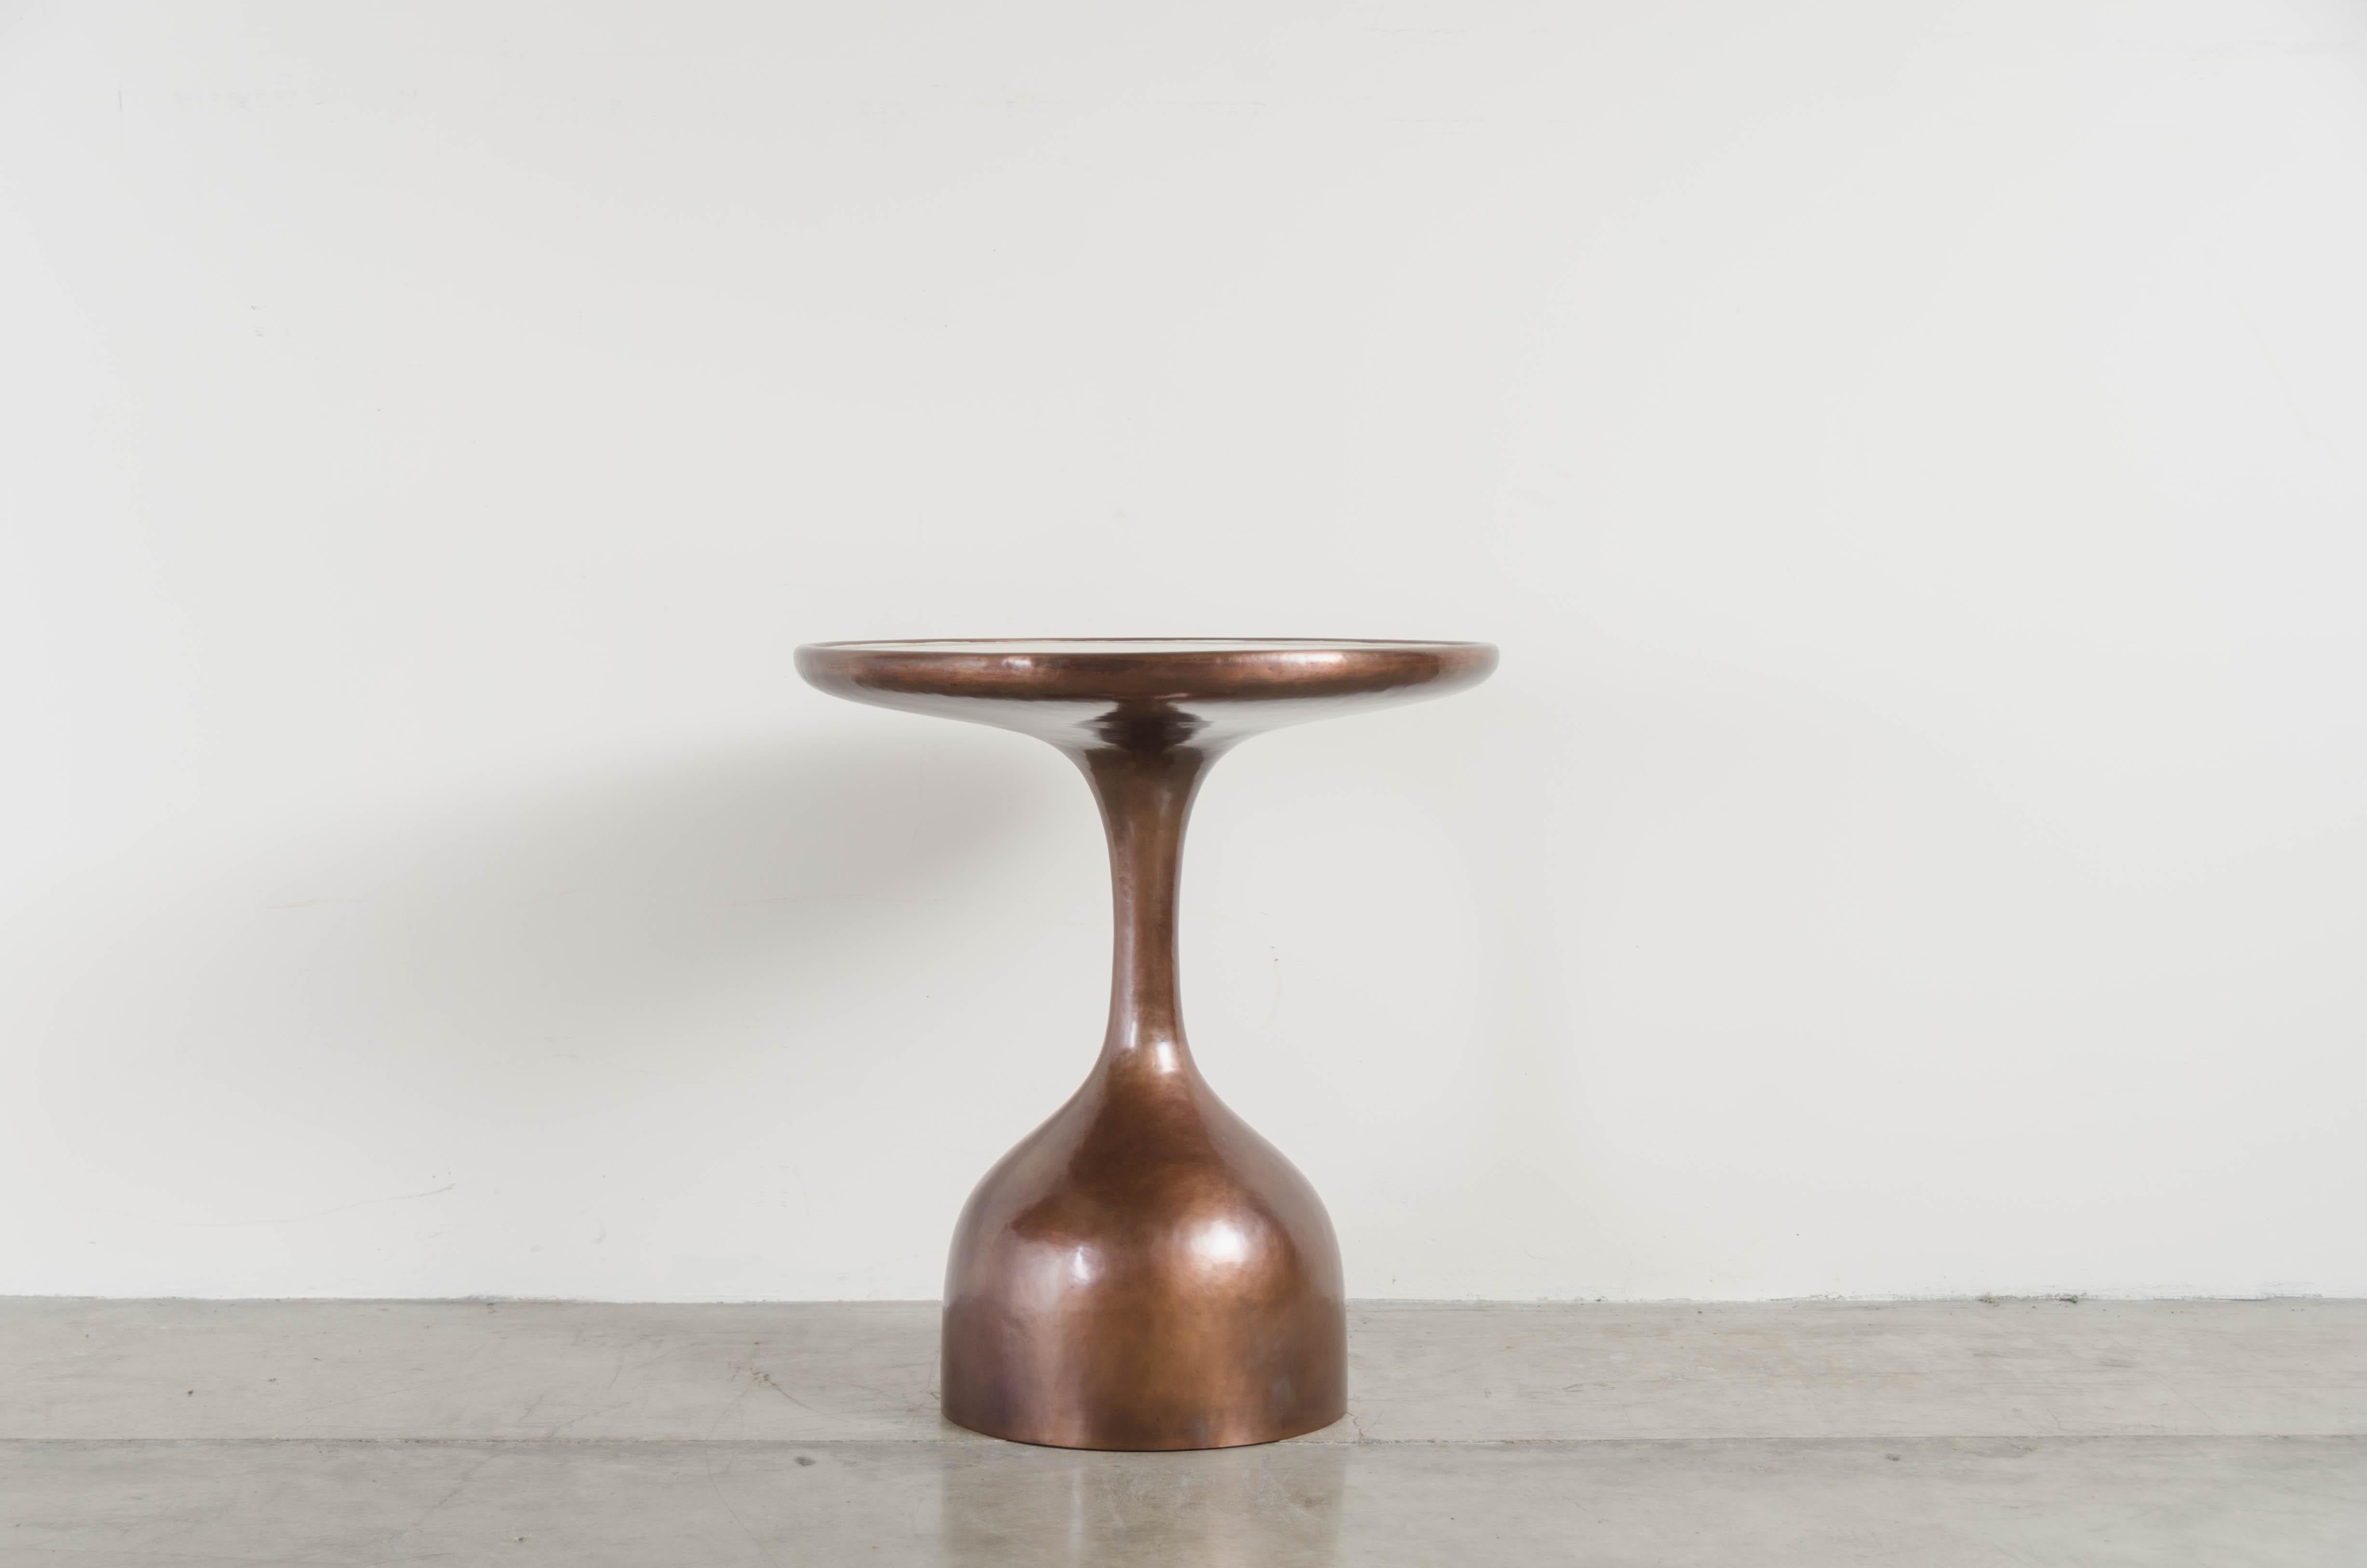 Le Verre Tisch mit cremefarbener Lackplatte
Antikes Kupfer
Cremefarbener Lack
Handrepousse
Limitierte Auflage
Jedes Stück wird individuell angefertigt und ist einzigartig.

Repousse